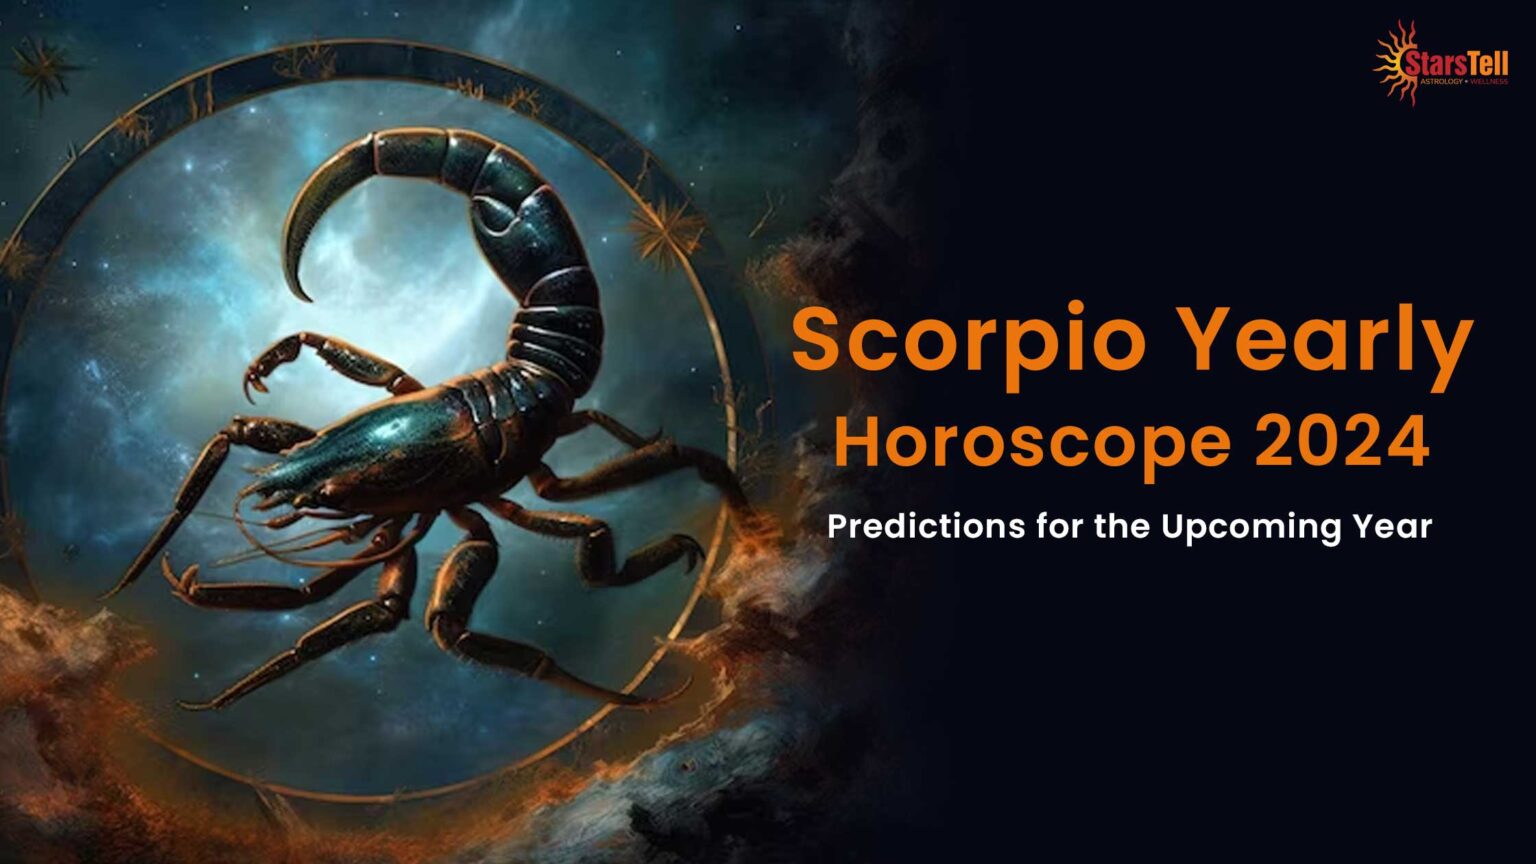 Scorpio Yearly Horoscope 2024 1536x864 